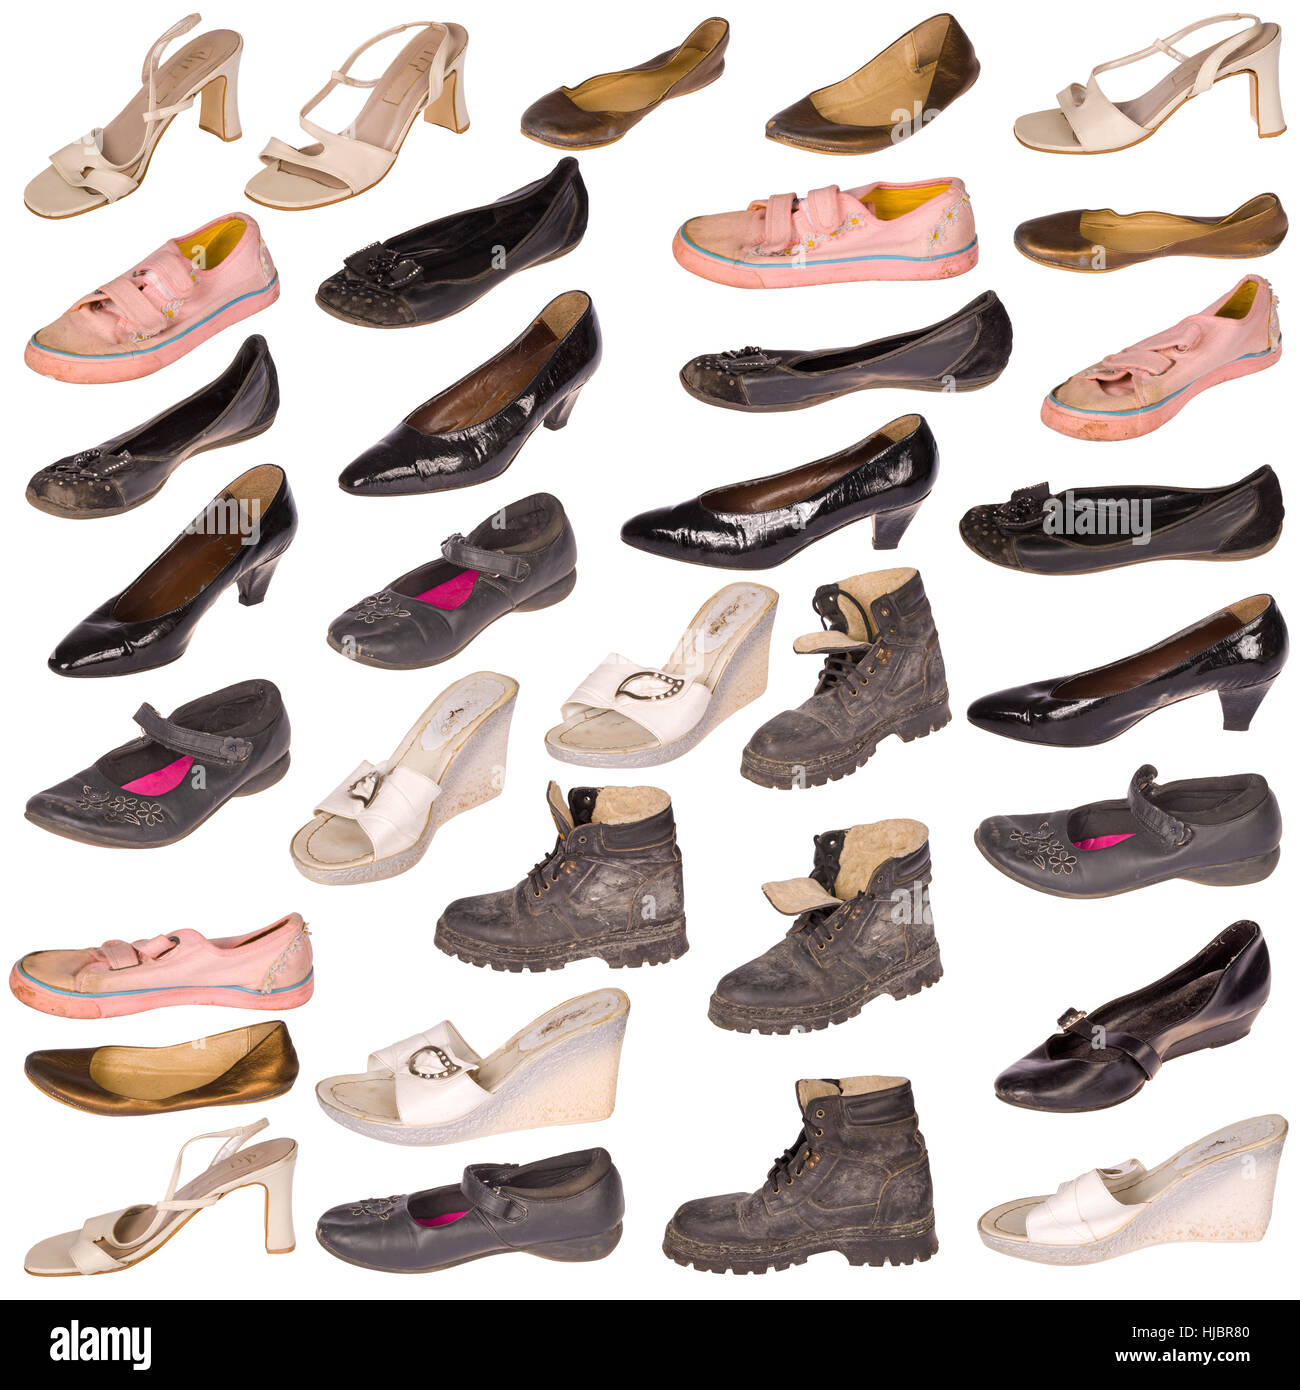 Viele alte, gut gebrauchte Schuhe und Stiefel, alle Logos und Marken  Markierungen entfernt, isoliert auf weiss Stockfotografie - Alamy